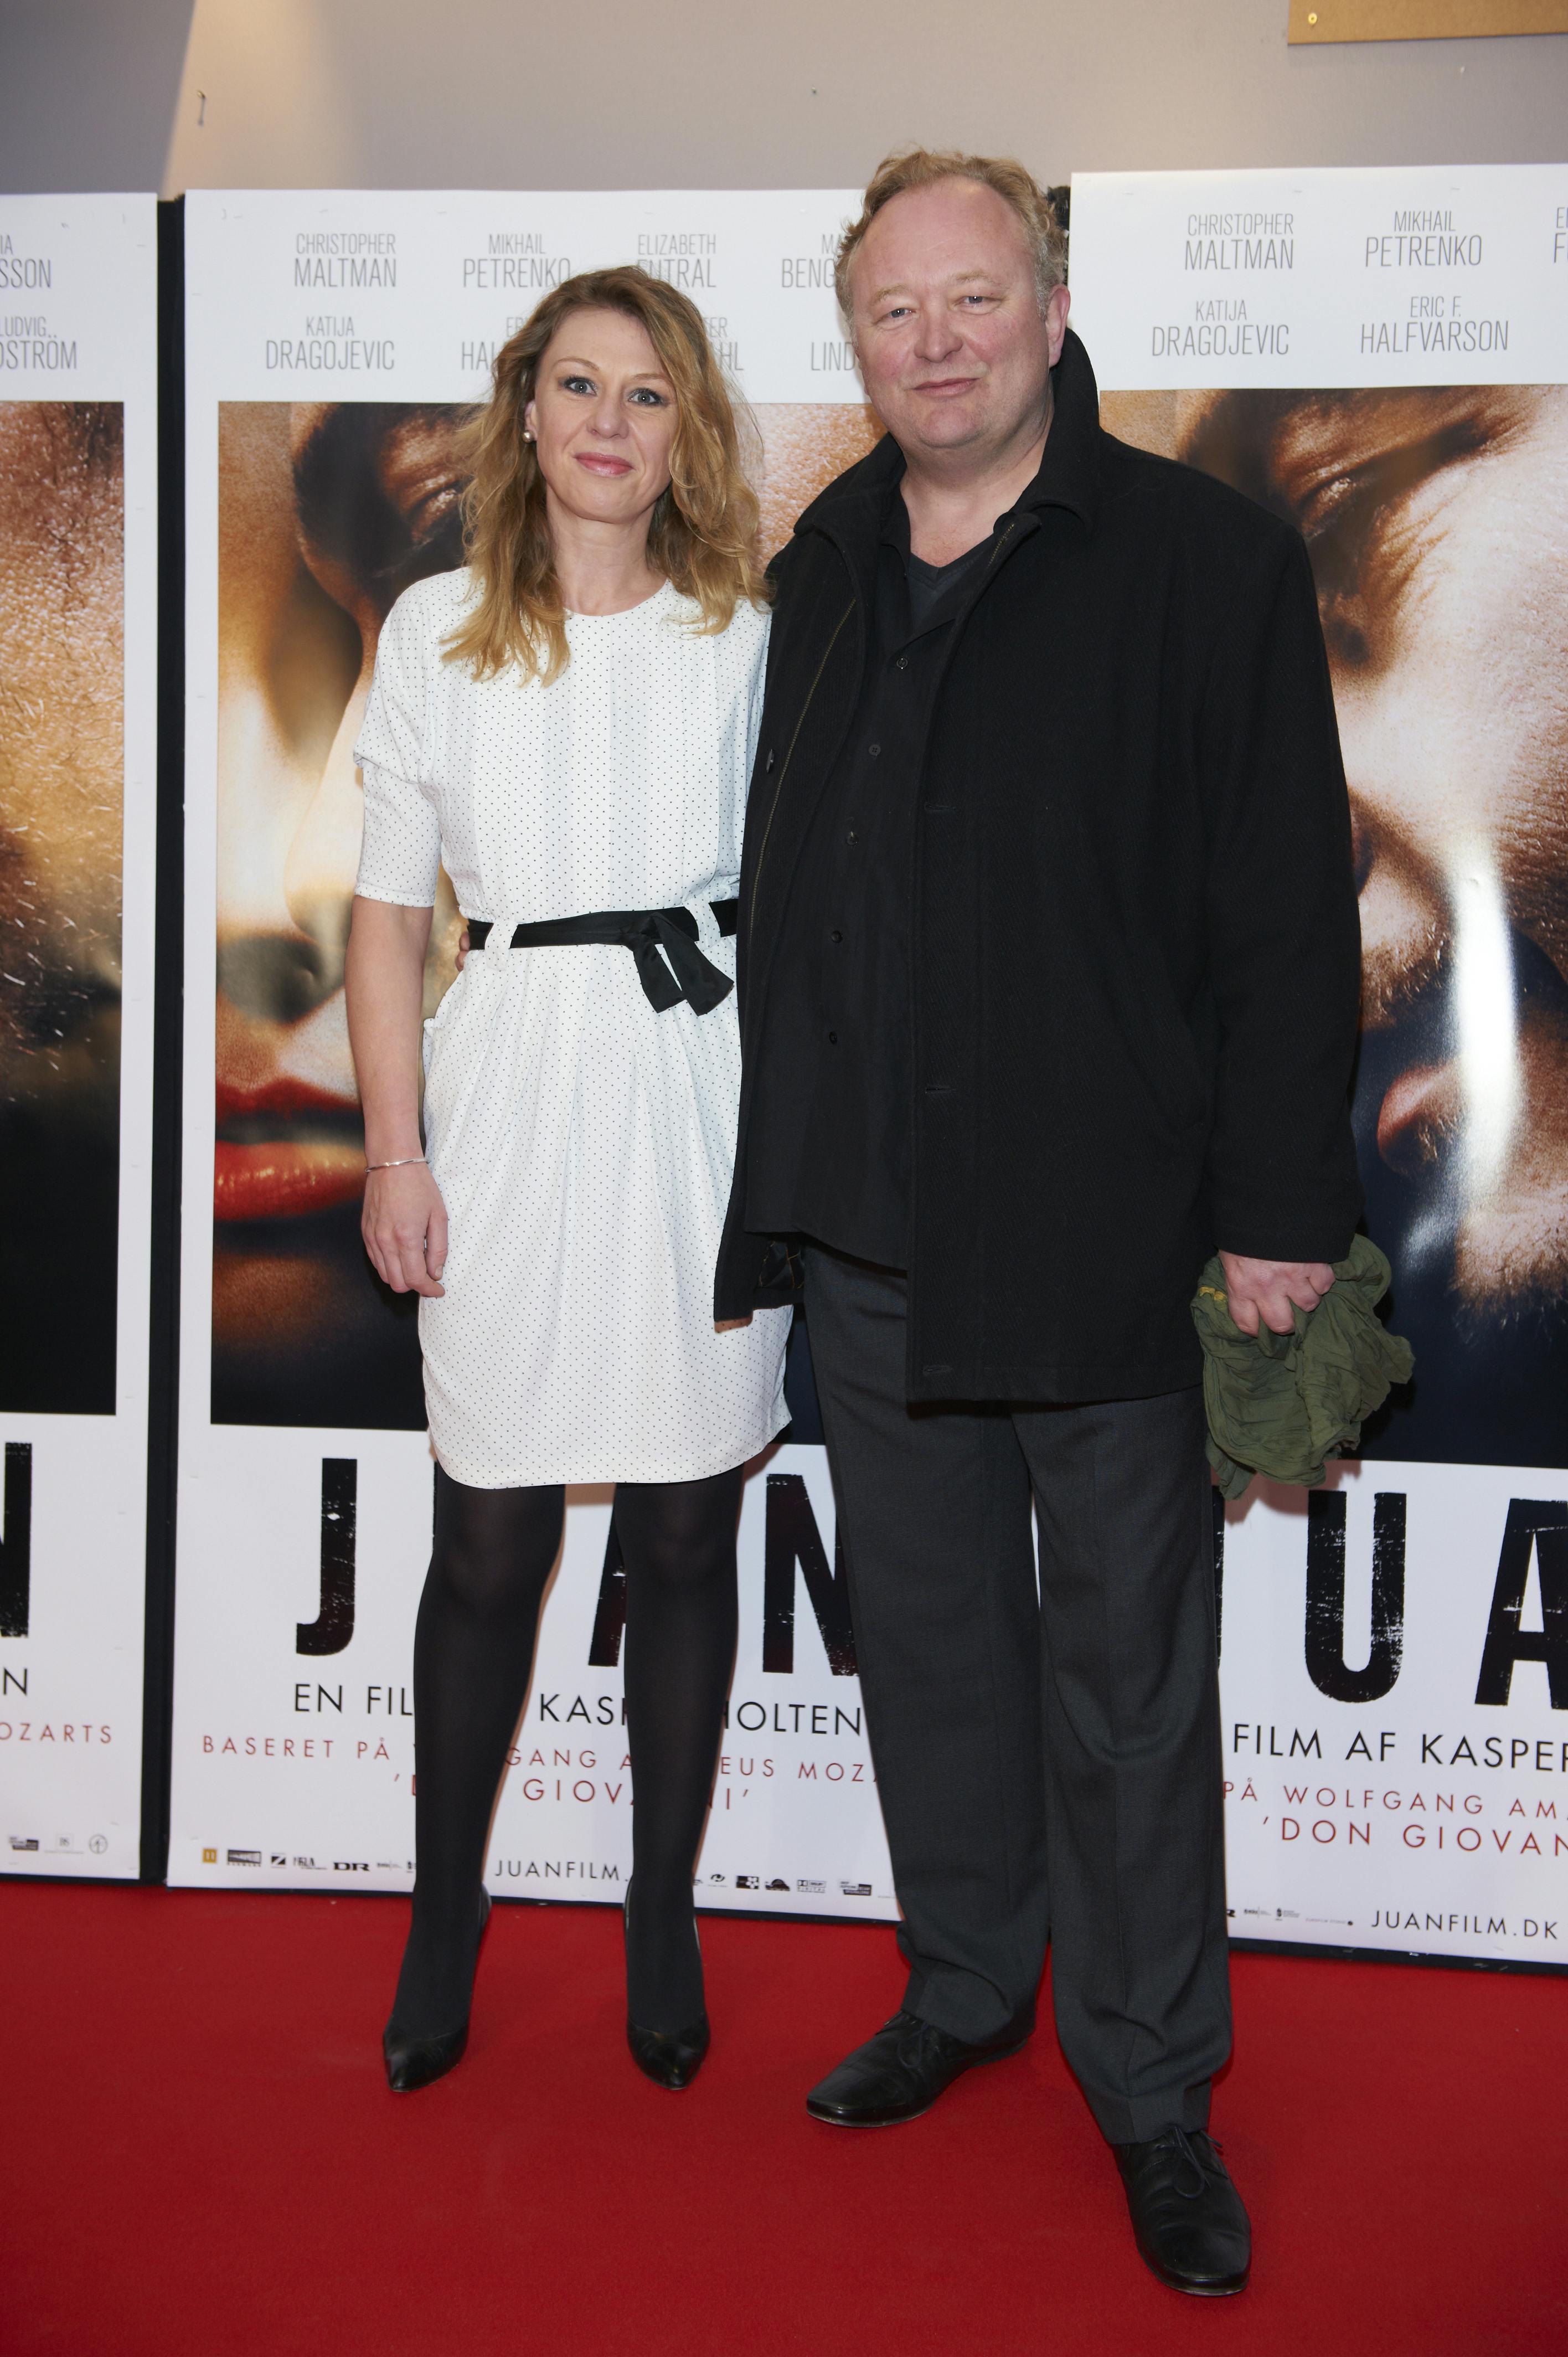 Premiere på filmen "Juan" i Imperial. - Skuespiller Bjarne Henriksen med kæreste. Dato: 02.04.2011 - Foto: Lars H. Laursen